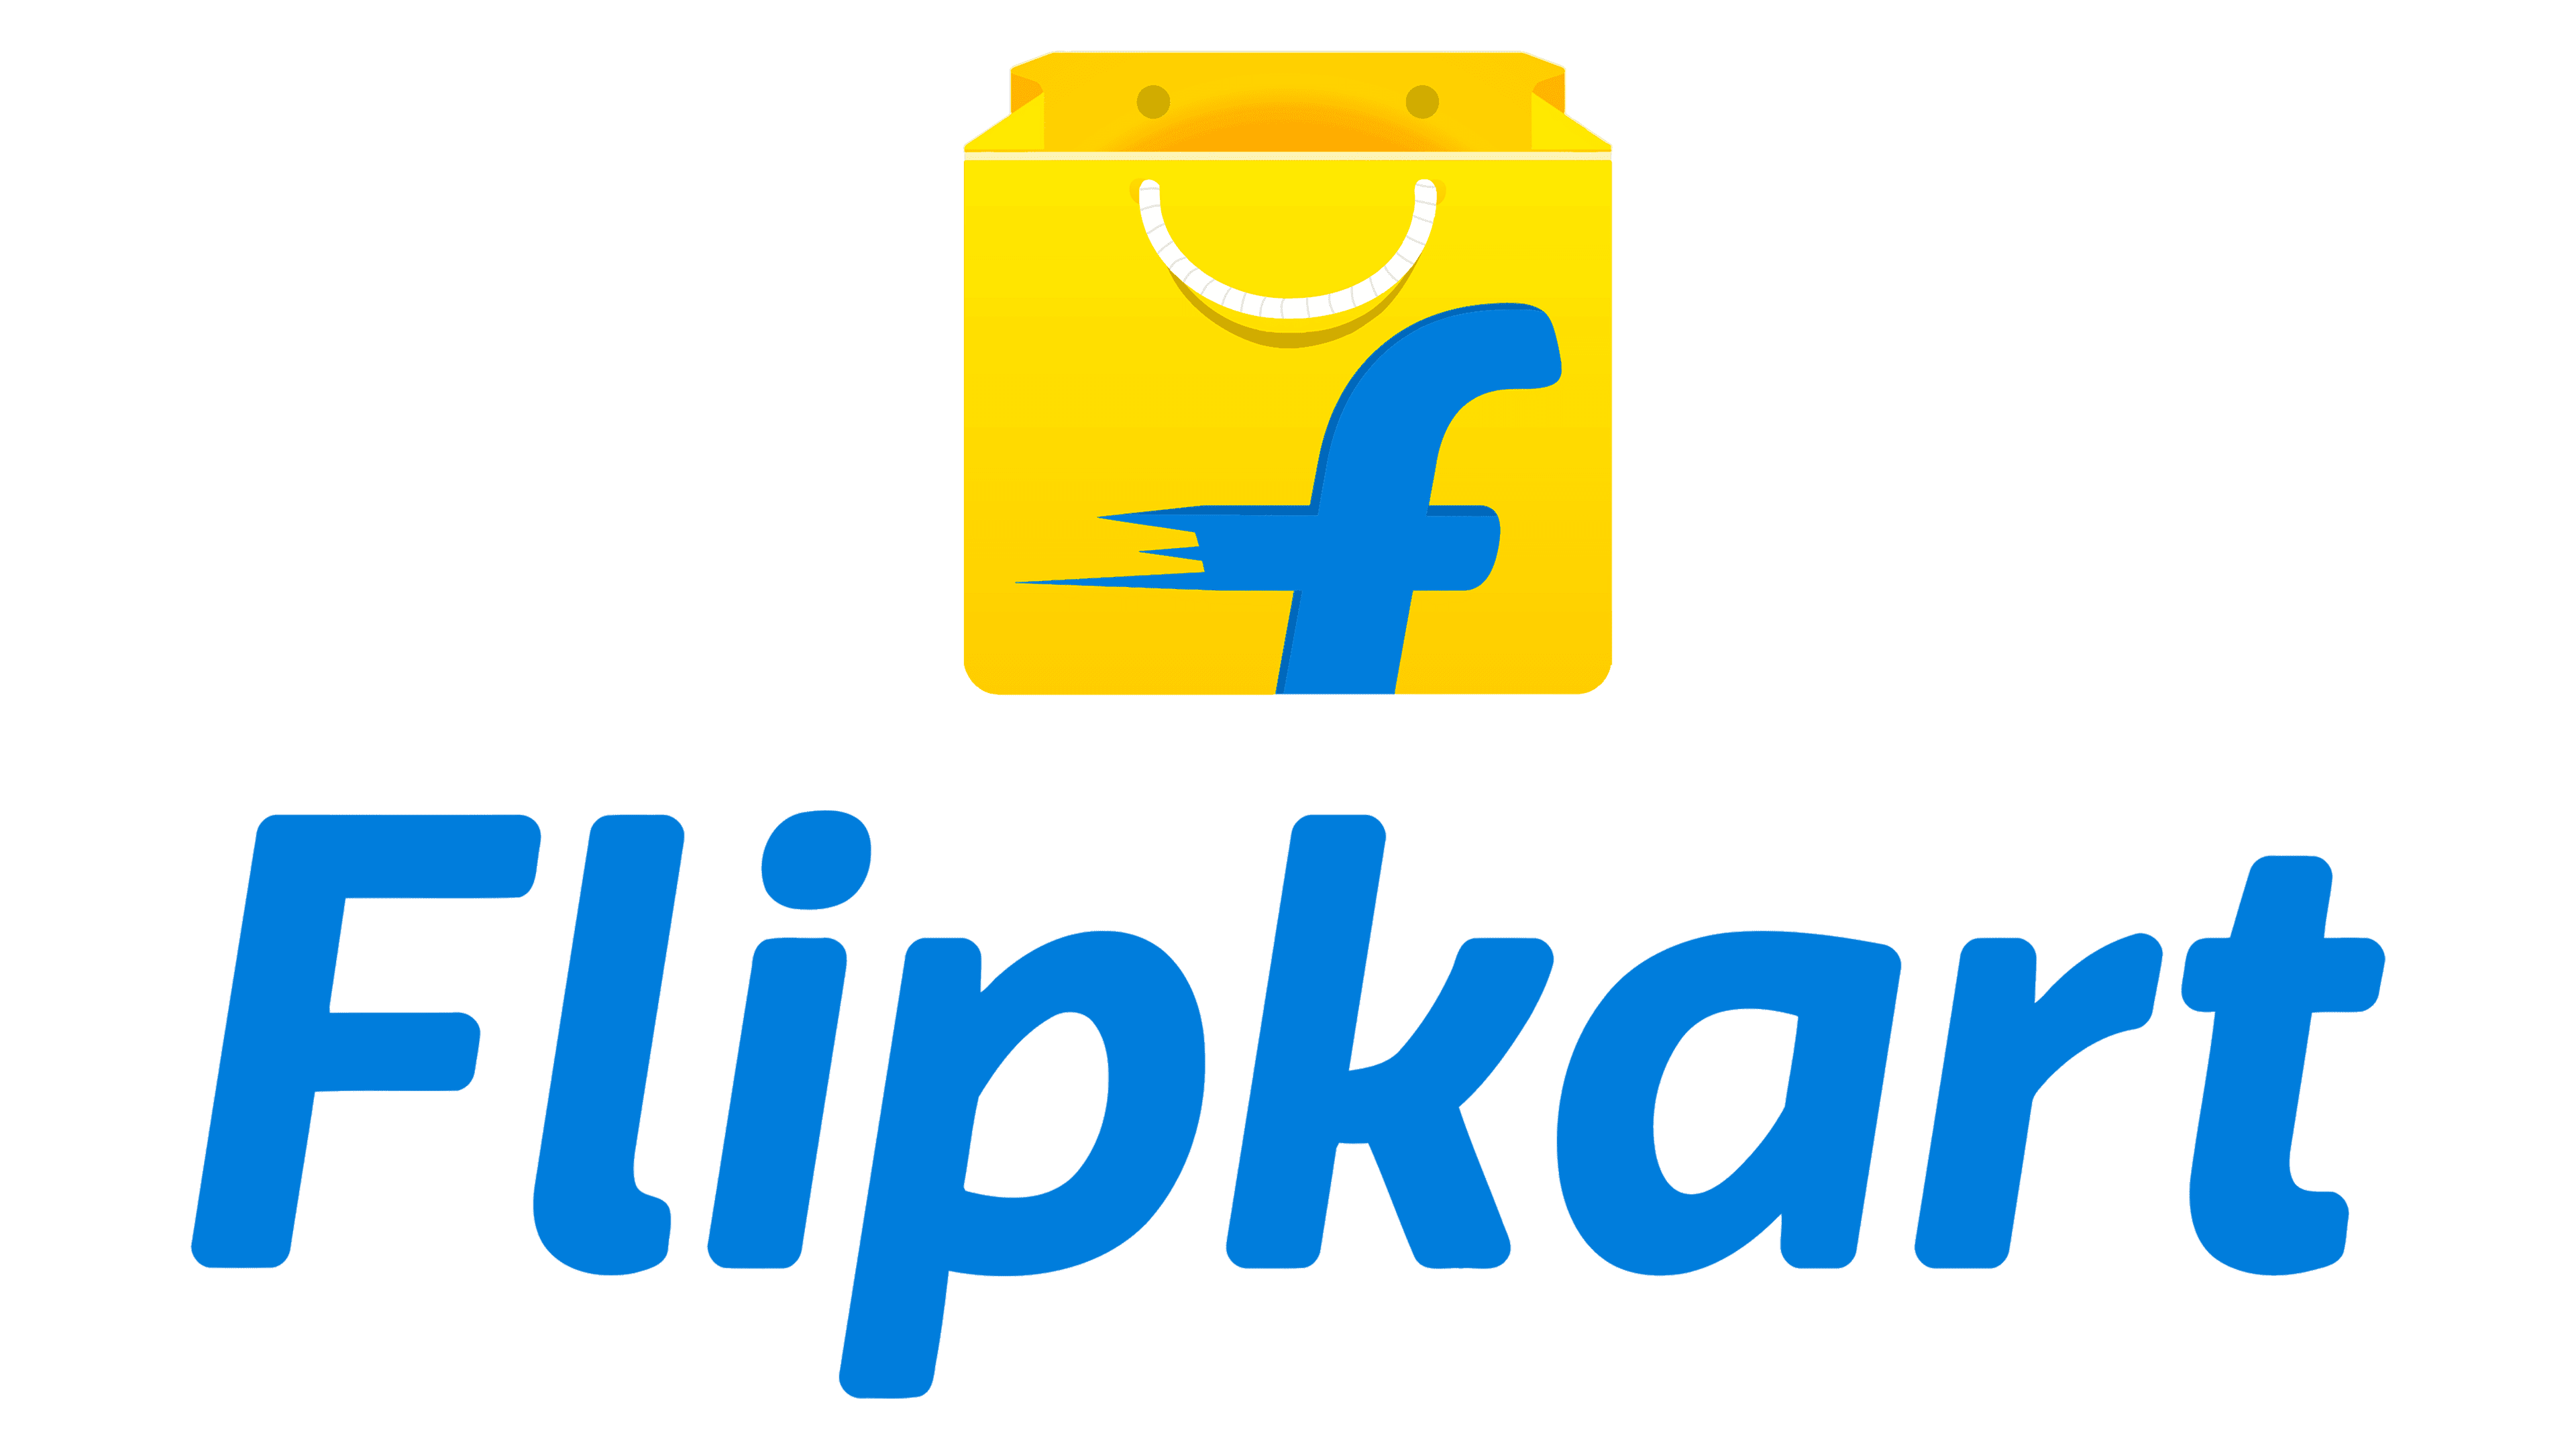 Brand New: New Logo for Flipkart